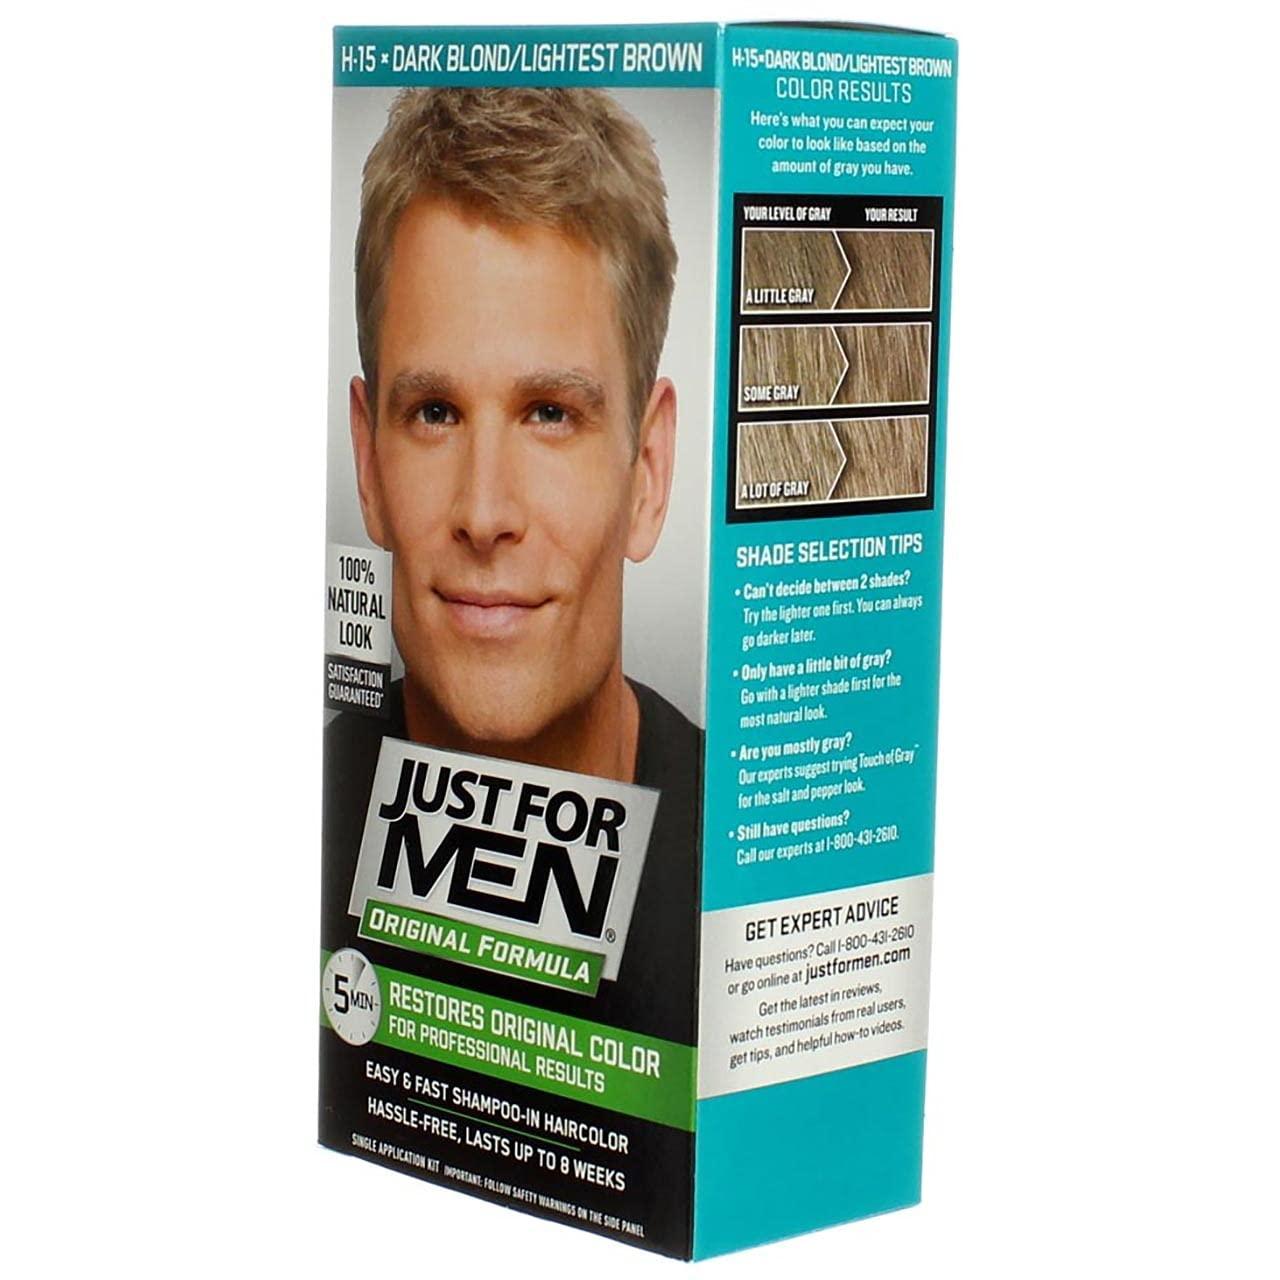 Just for Men Original Formula Men's Hair Color Dark Blond/Lightest Brown  H-15 Single Application Kit